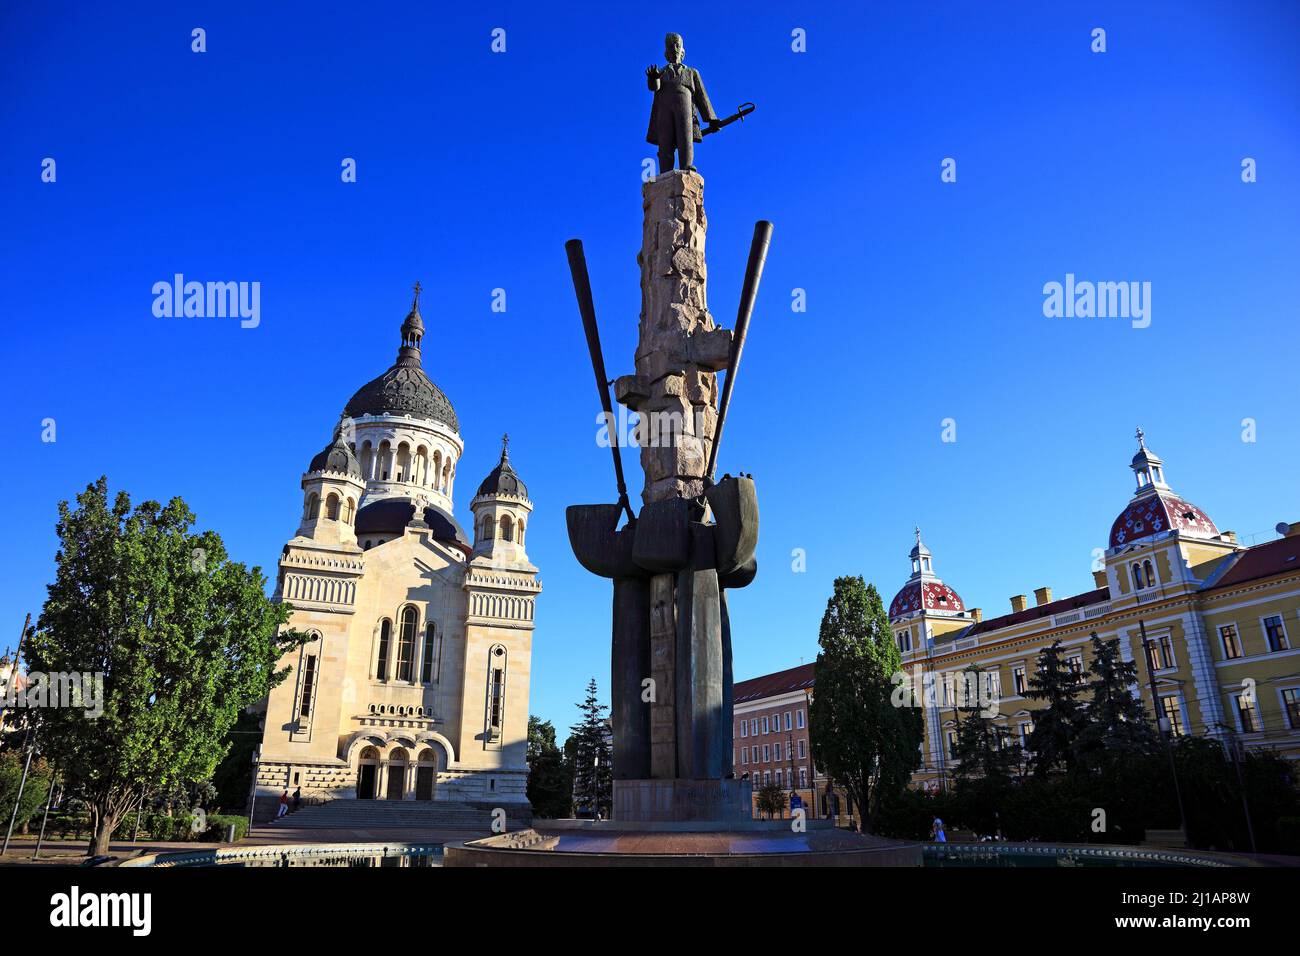 Statua di Avram Iancu e Cattedrale ortodossa di Avram Iancu a Cluj, Siebenbürgen, Rumänien / Statua di Avram Iancu e Cattedrale ortodossa a Foto Stock